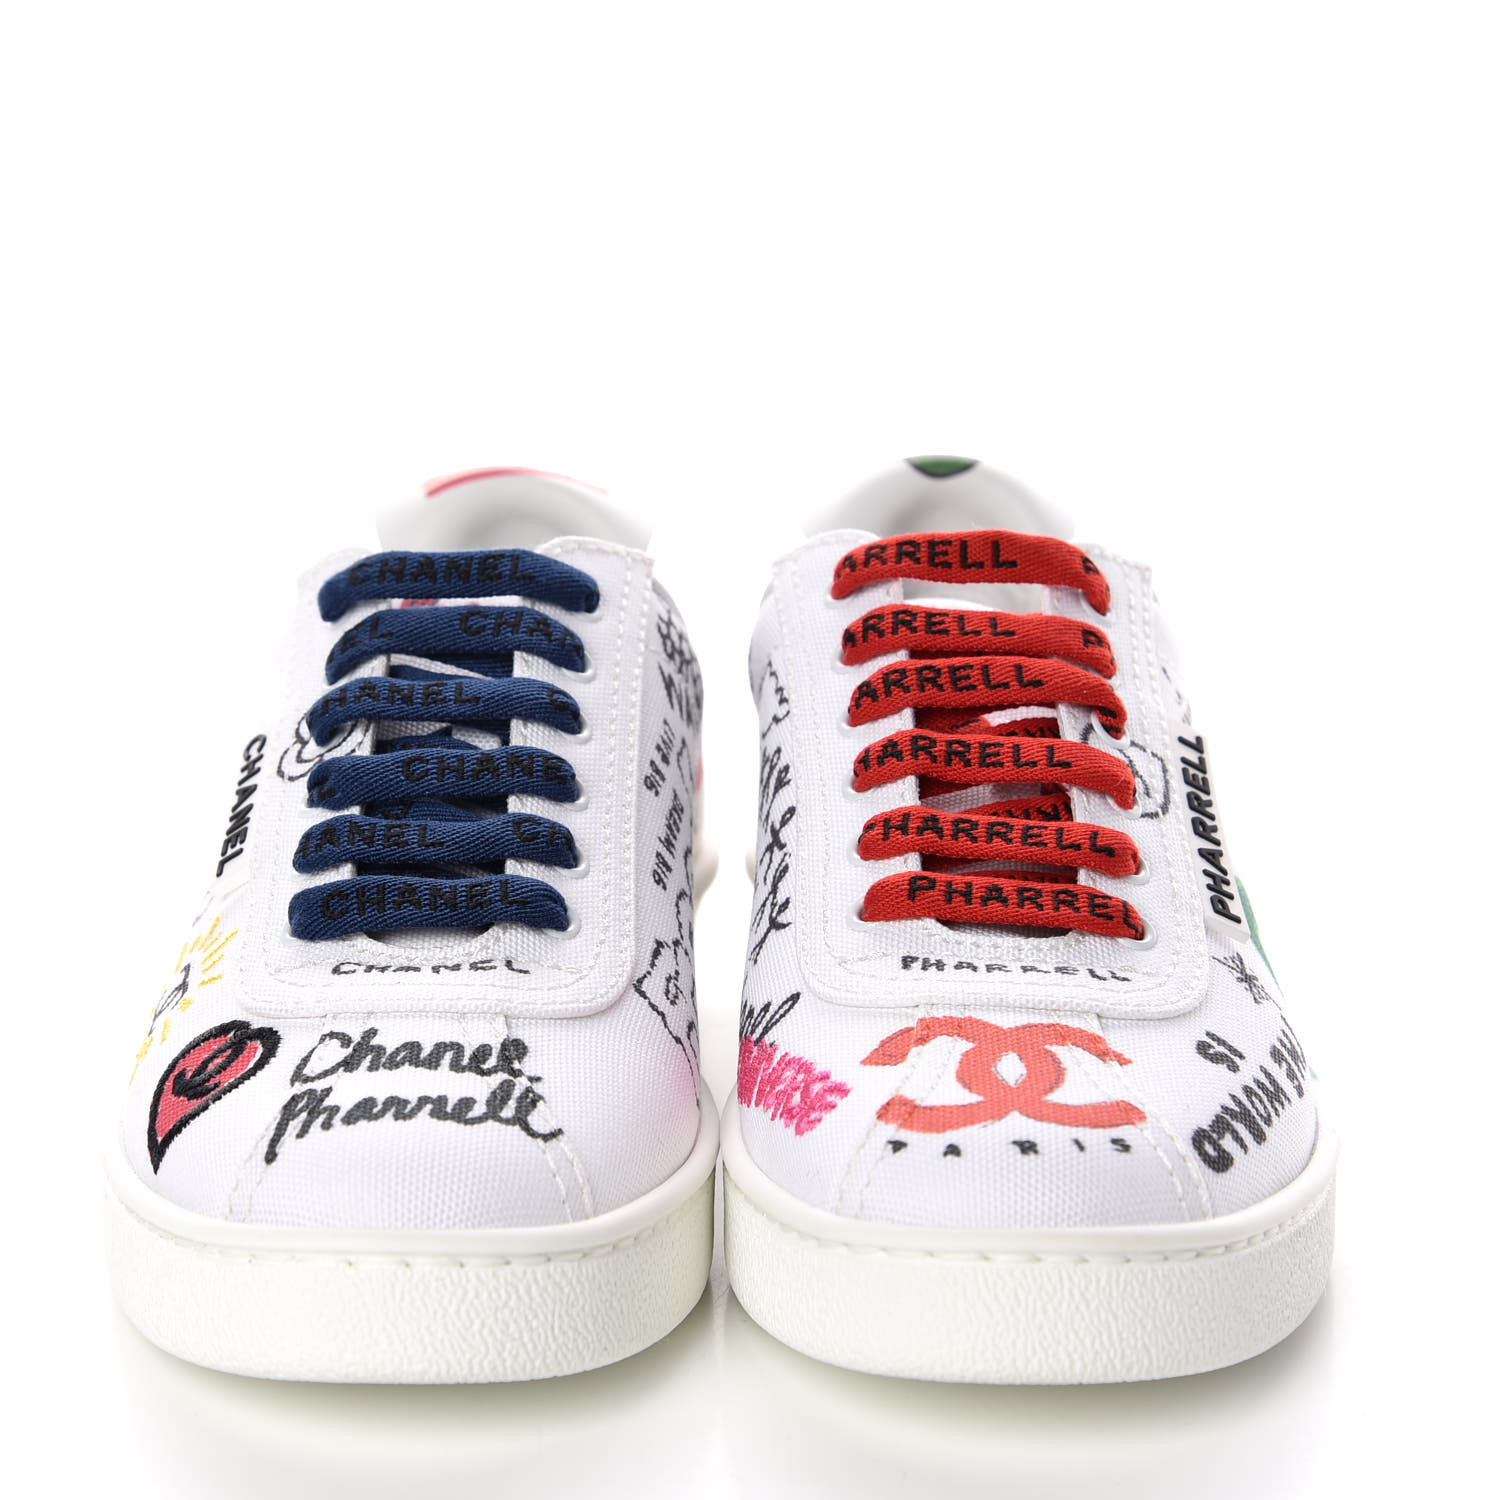 chanel pharrell white sneakers